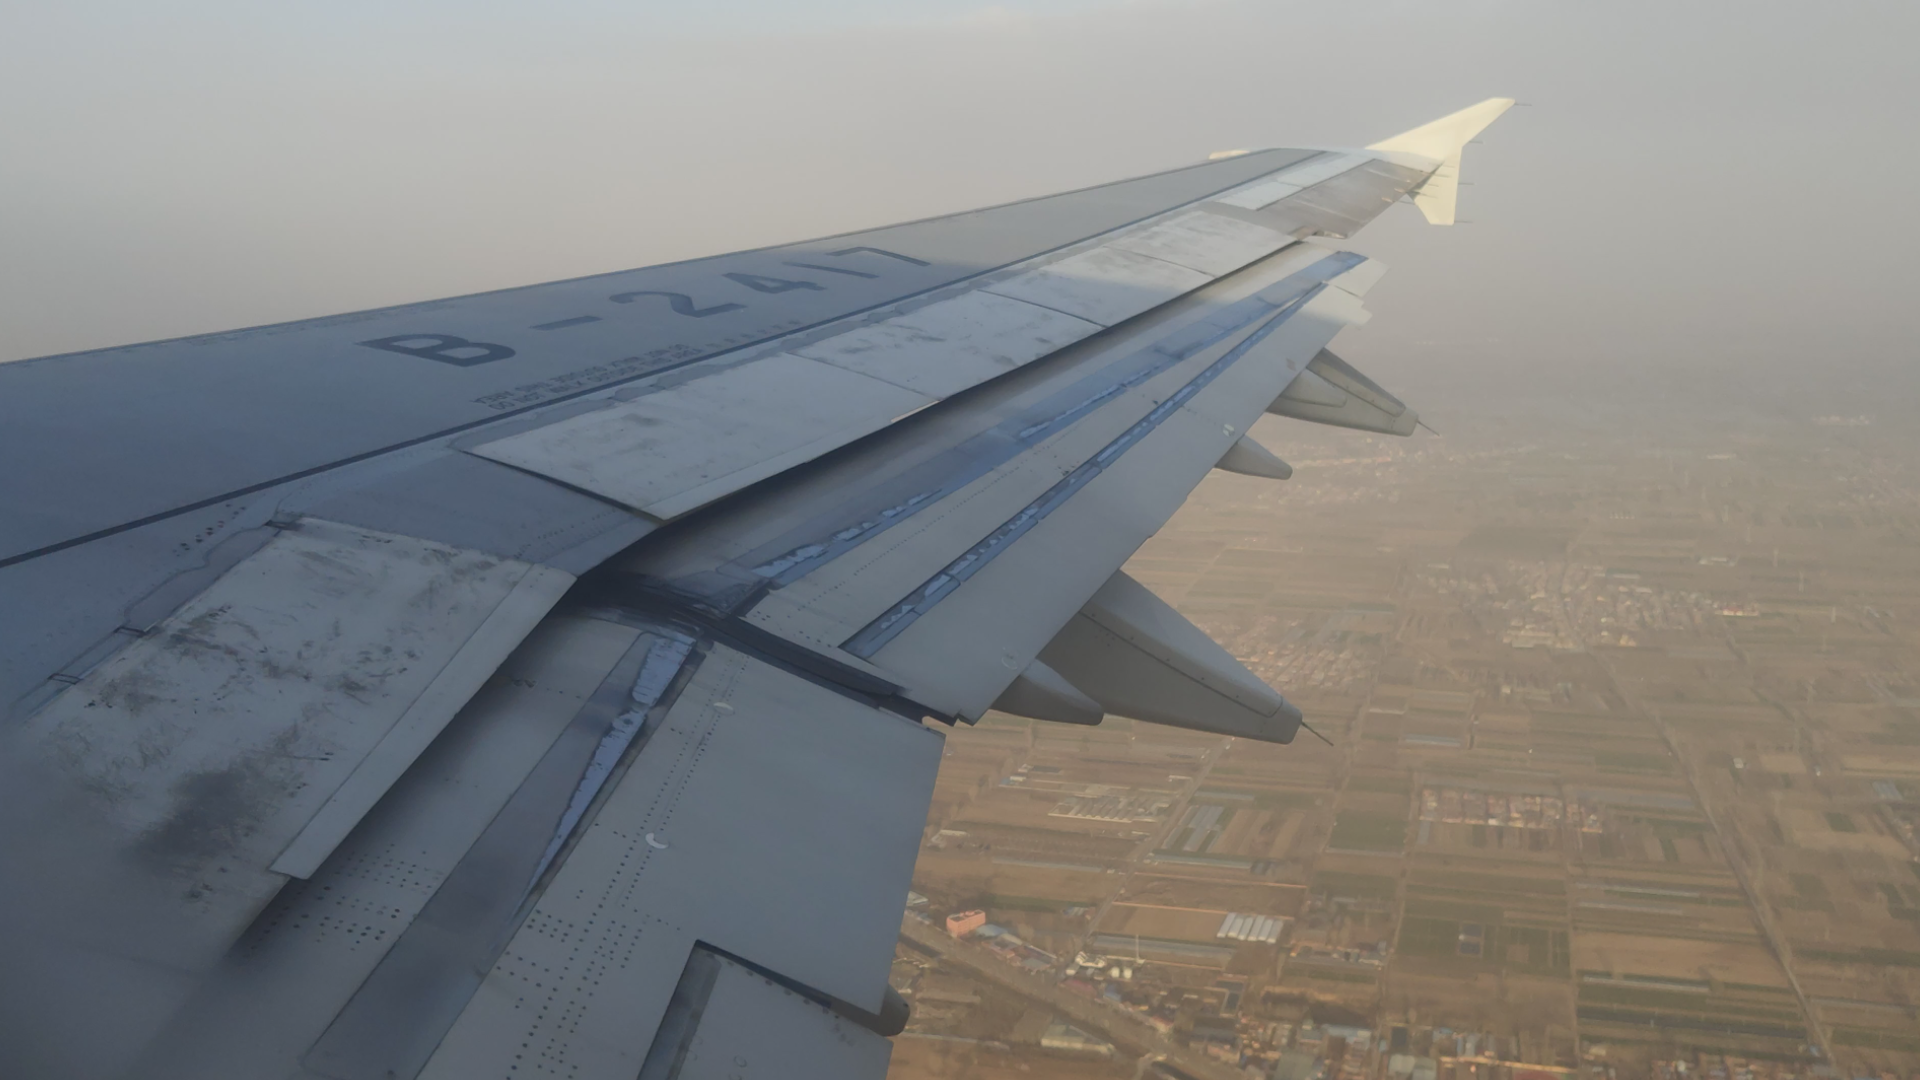 空客A320机翼图片